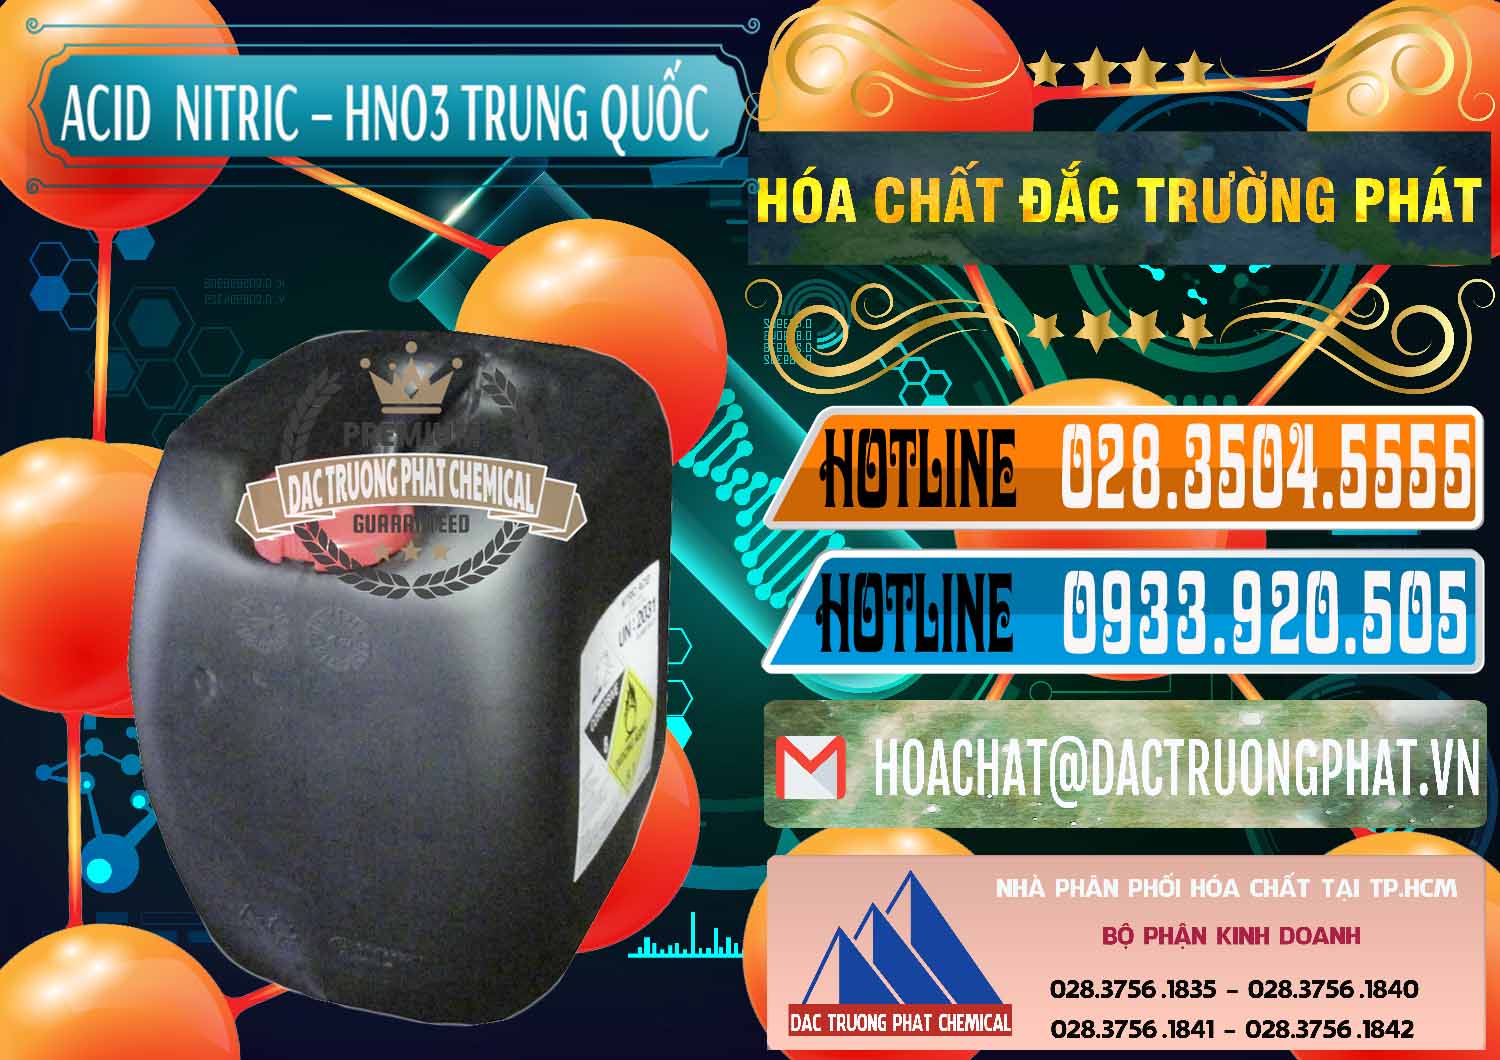 Cty bán & cung cấp Acid Nitric – Axit Nitric HNO3 68% Trung Quốc China - 0343 - Đơn vị cung ứng & phân phối hóa chất tại TP.HCM - stmp.net